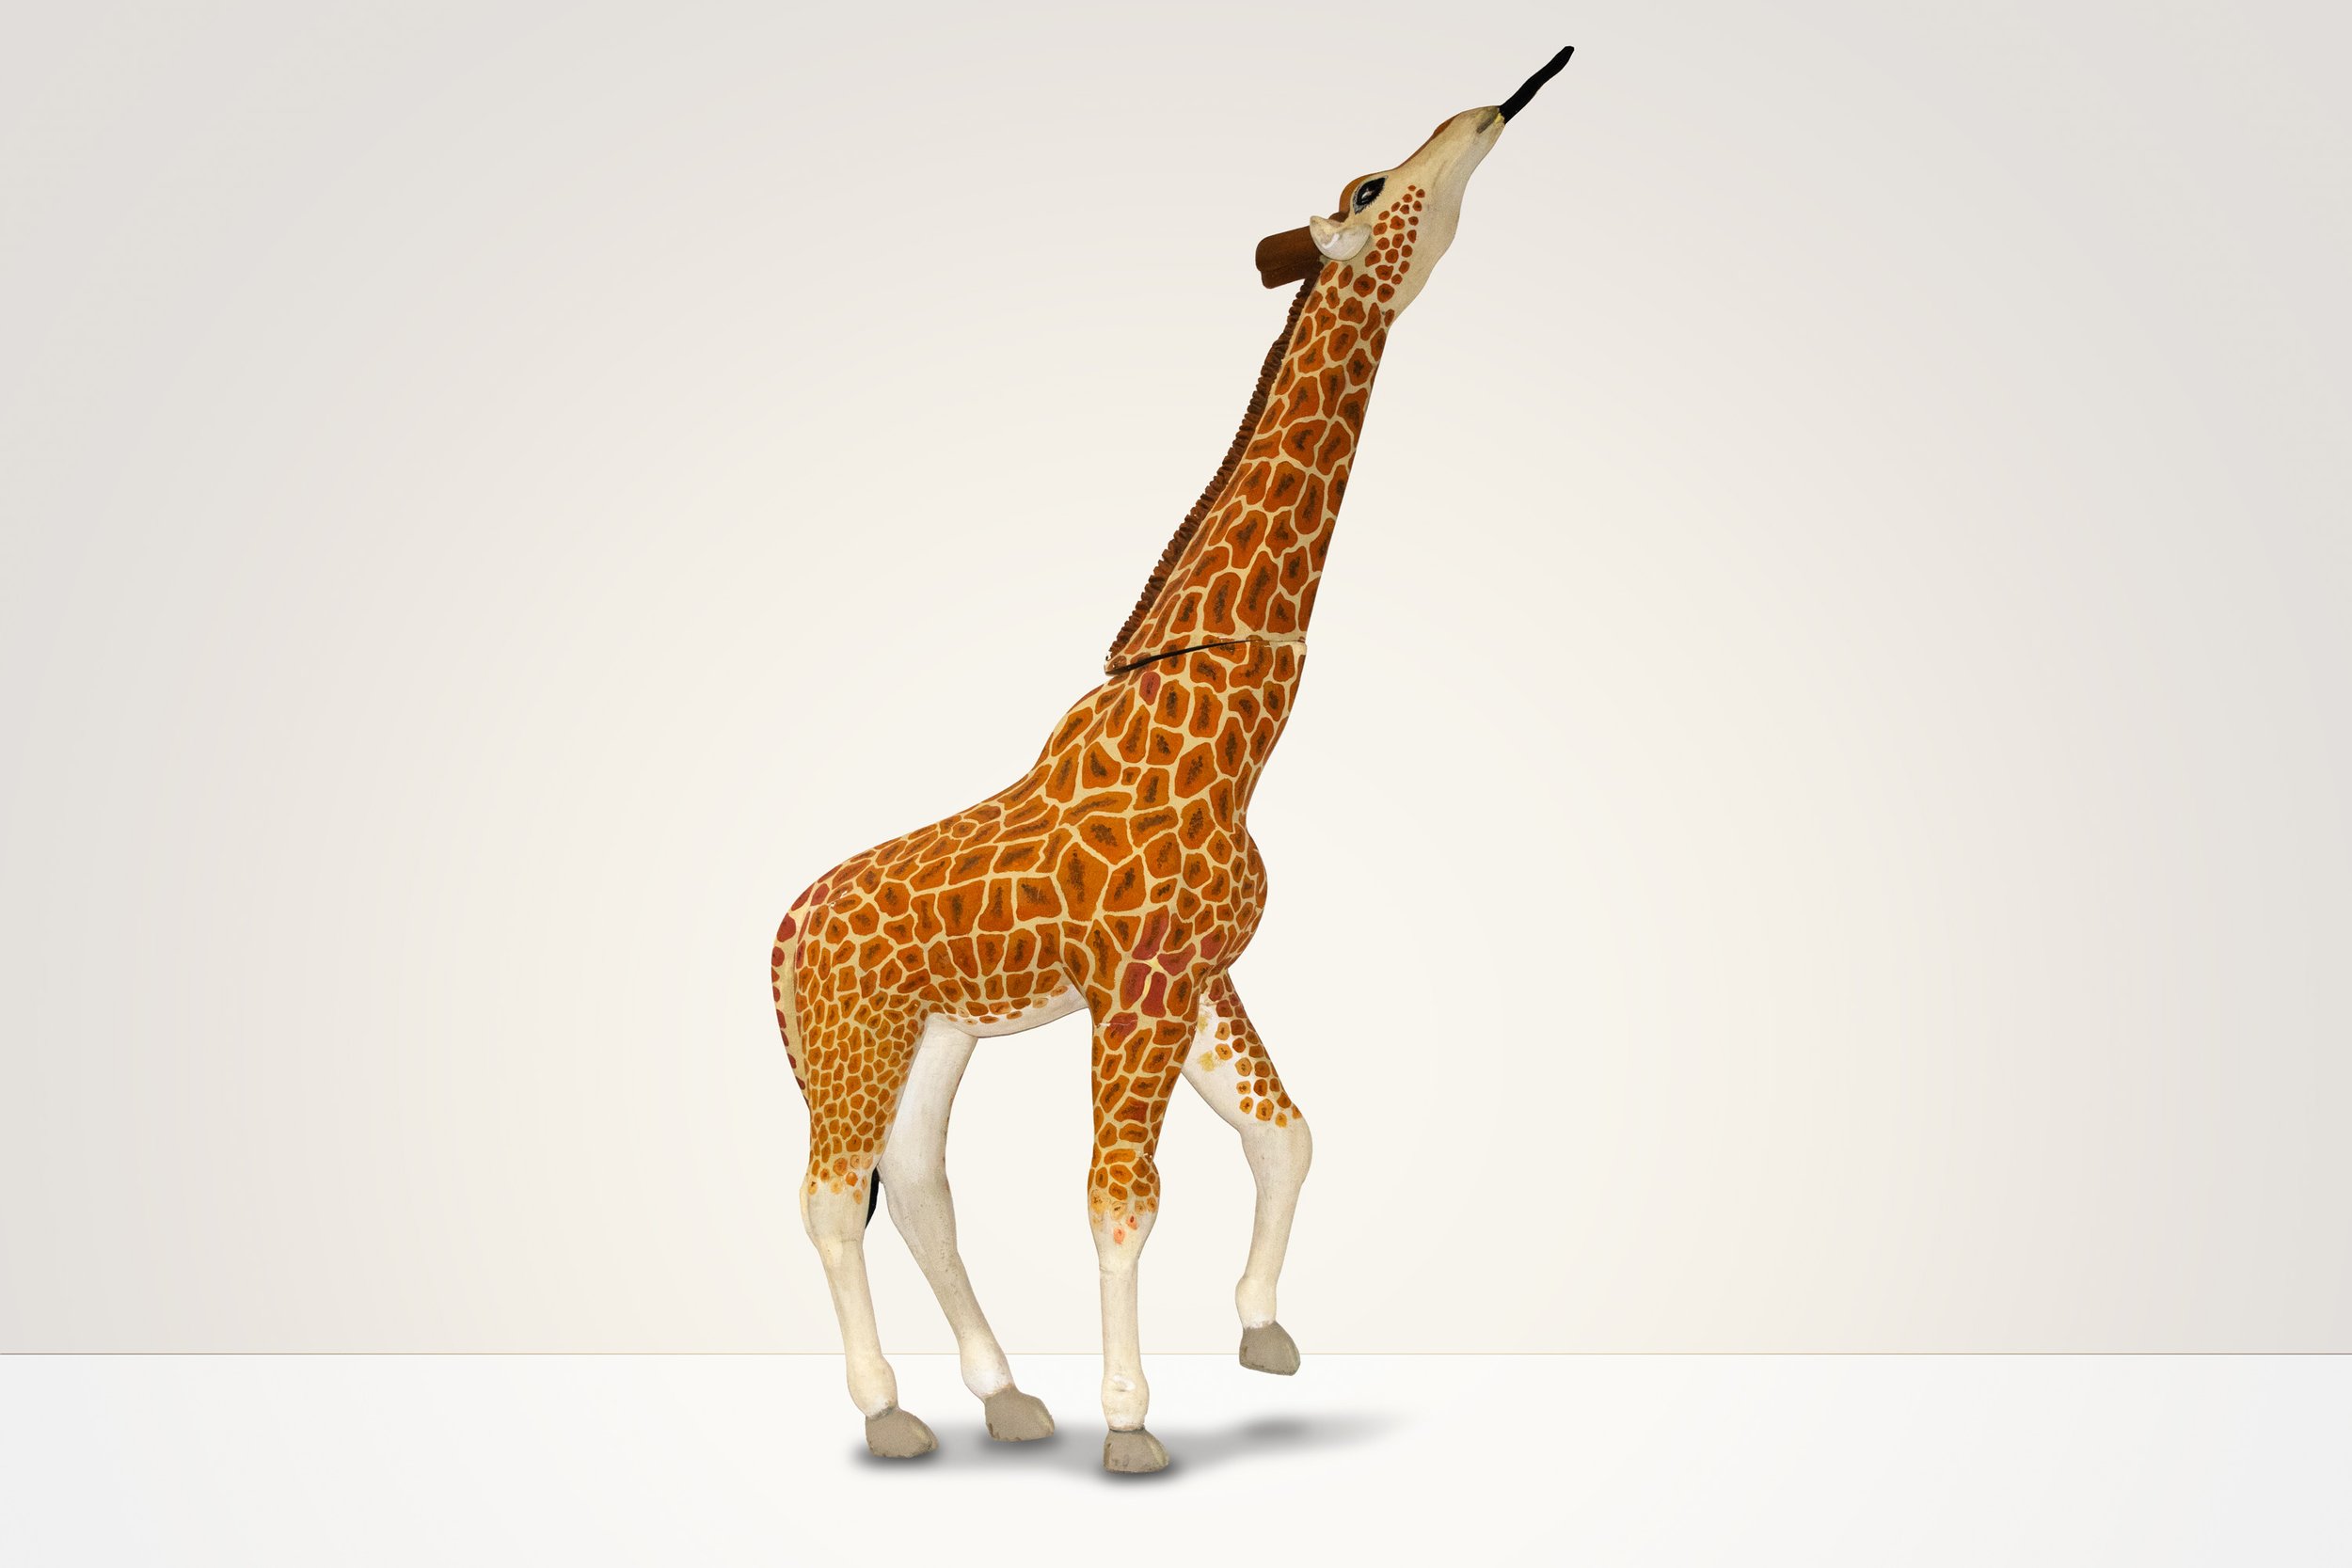 The 3D Giraffe